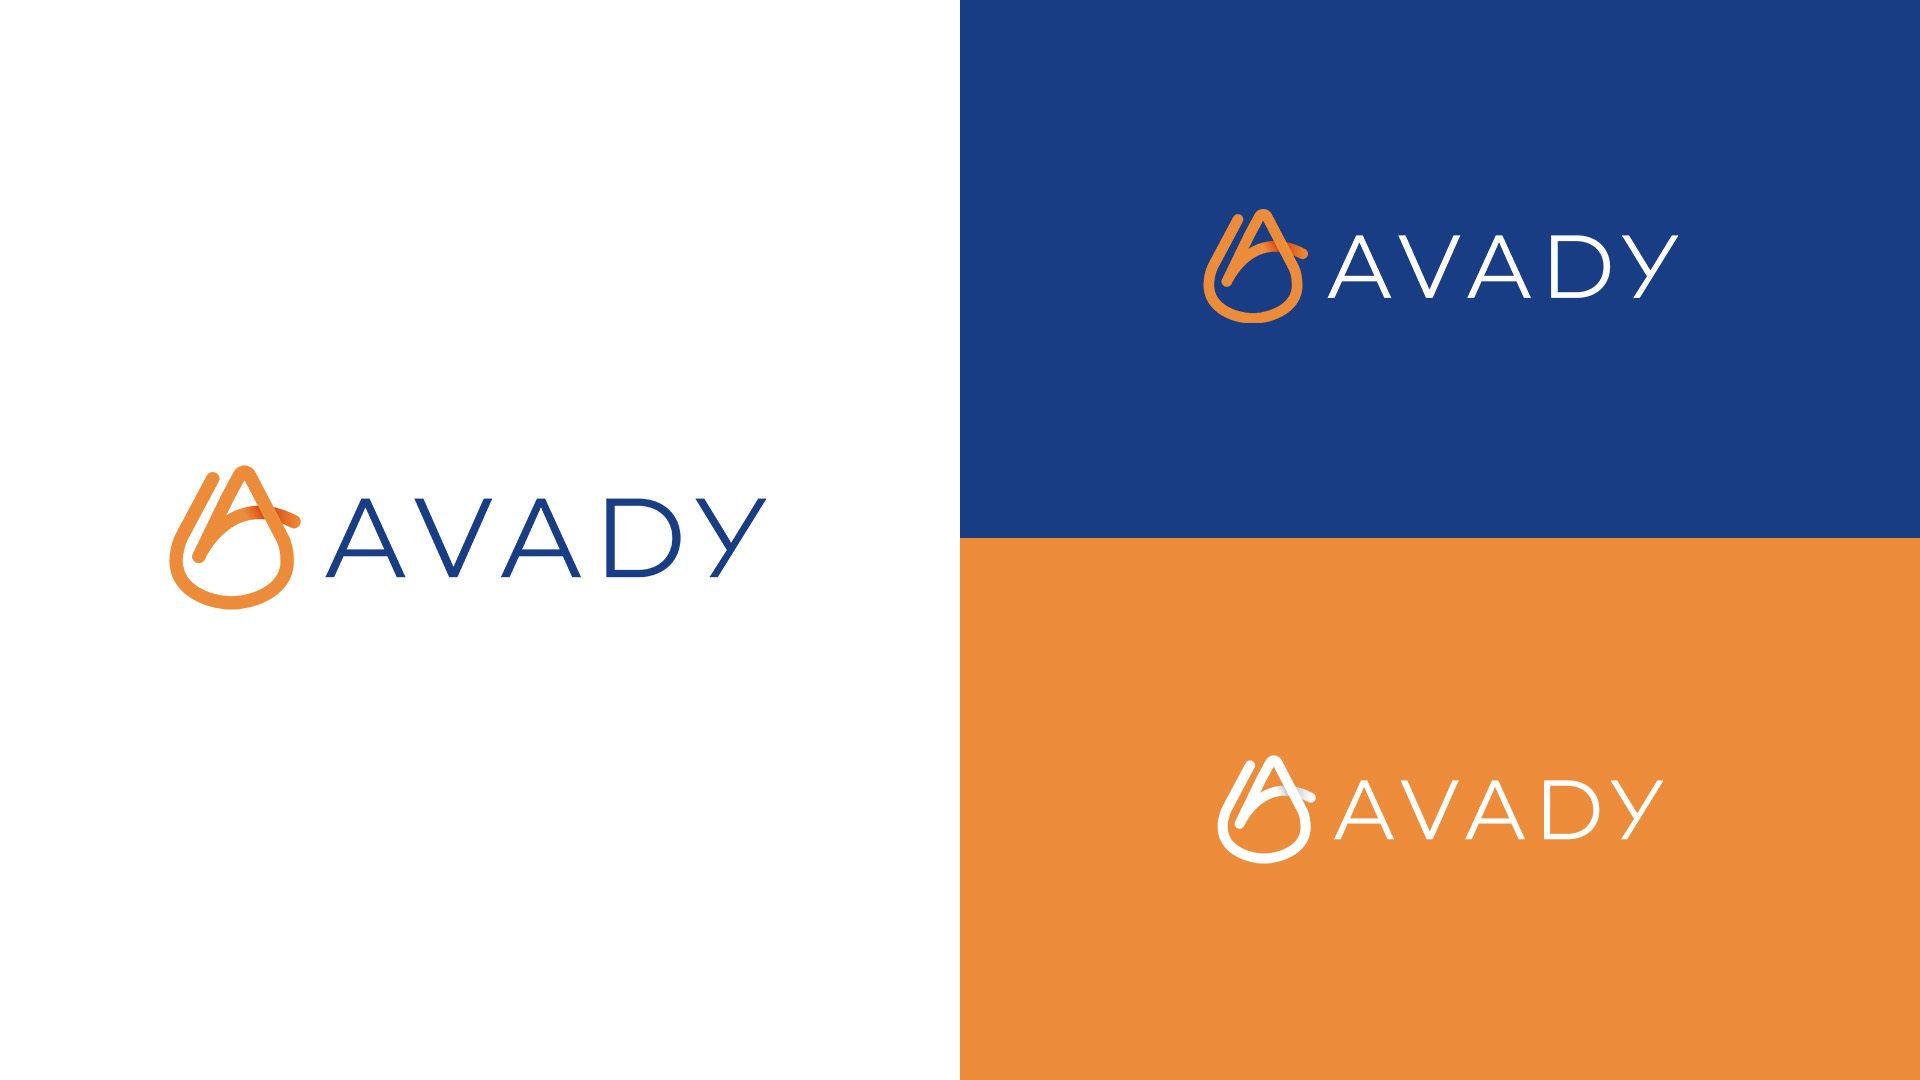 Logo Avady Pool - Val d'oise communcation